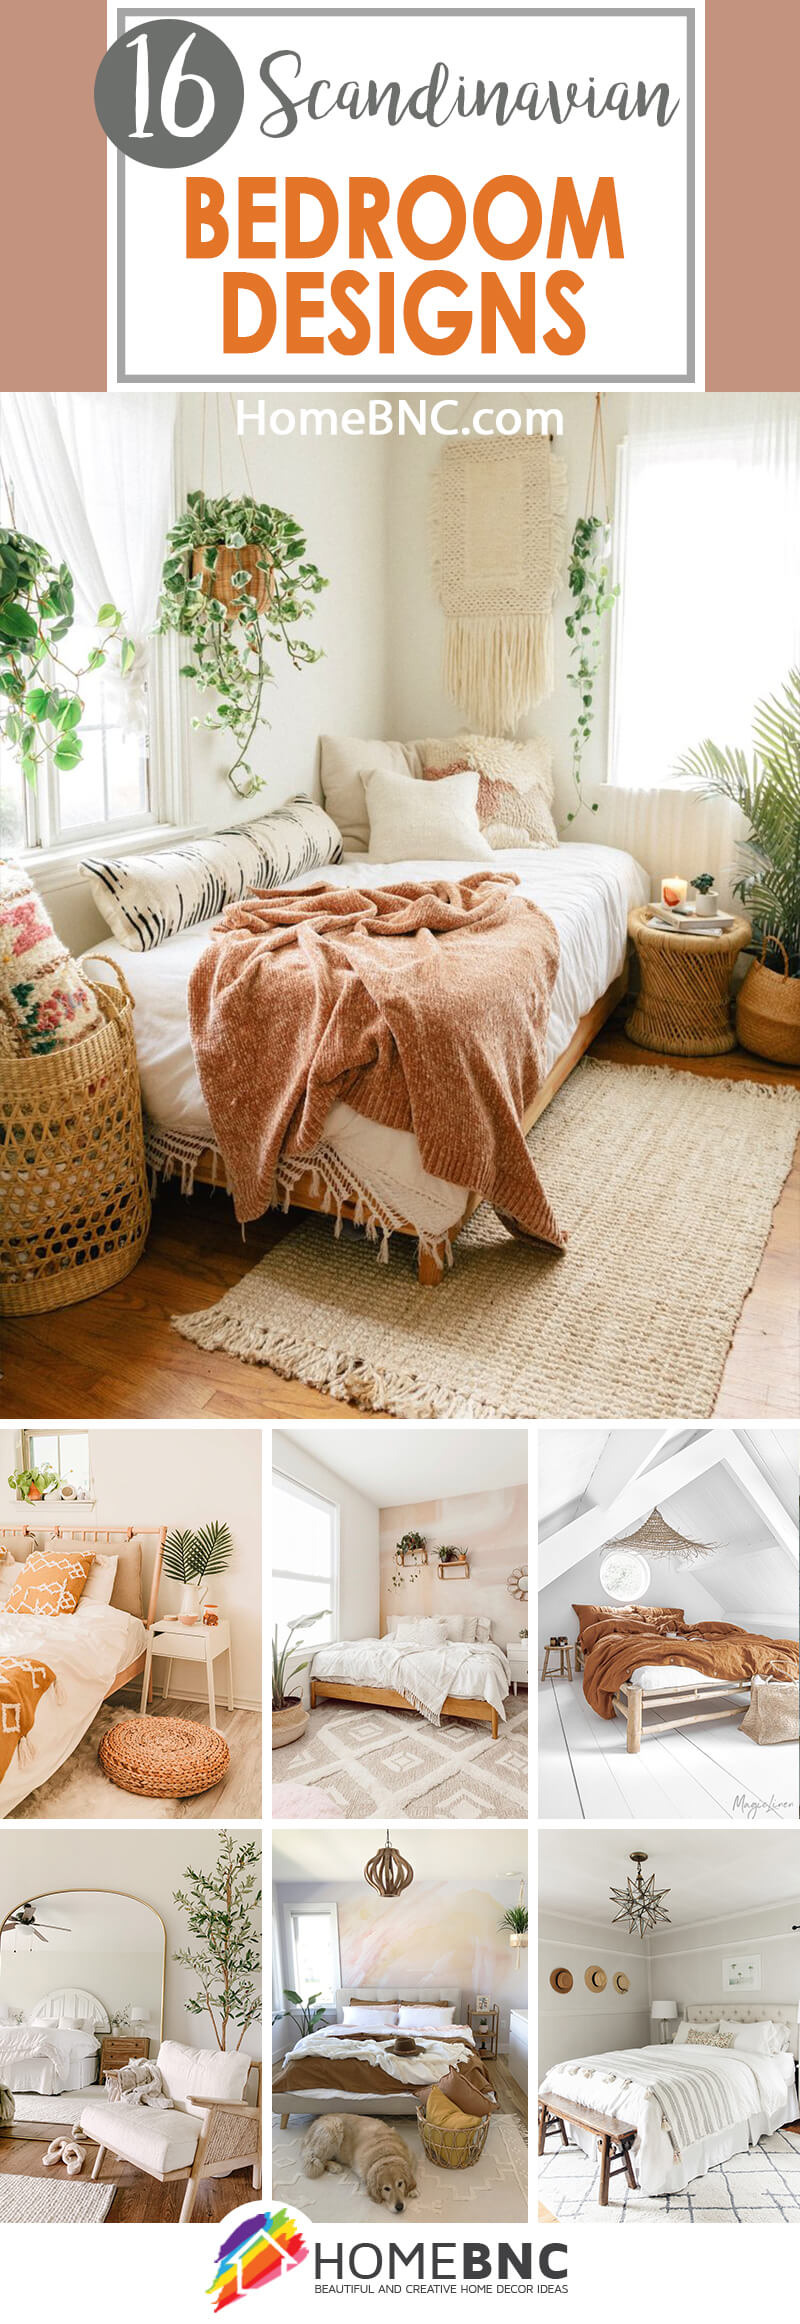 Best Scandinavian Bedroom Design Ideas